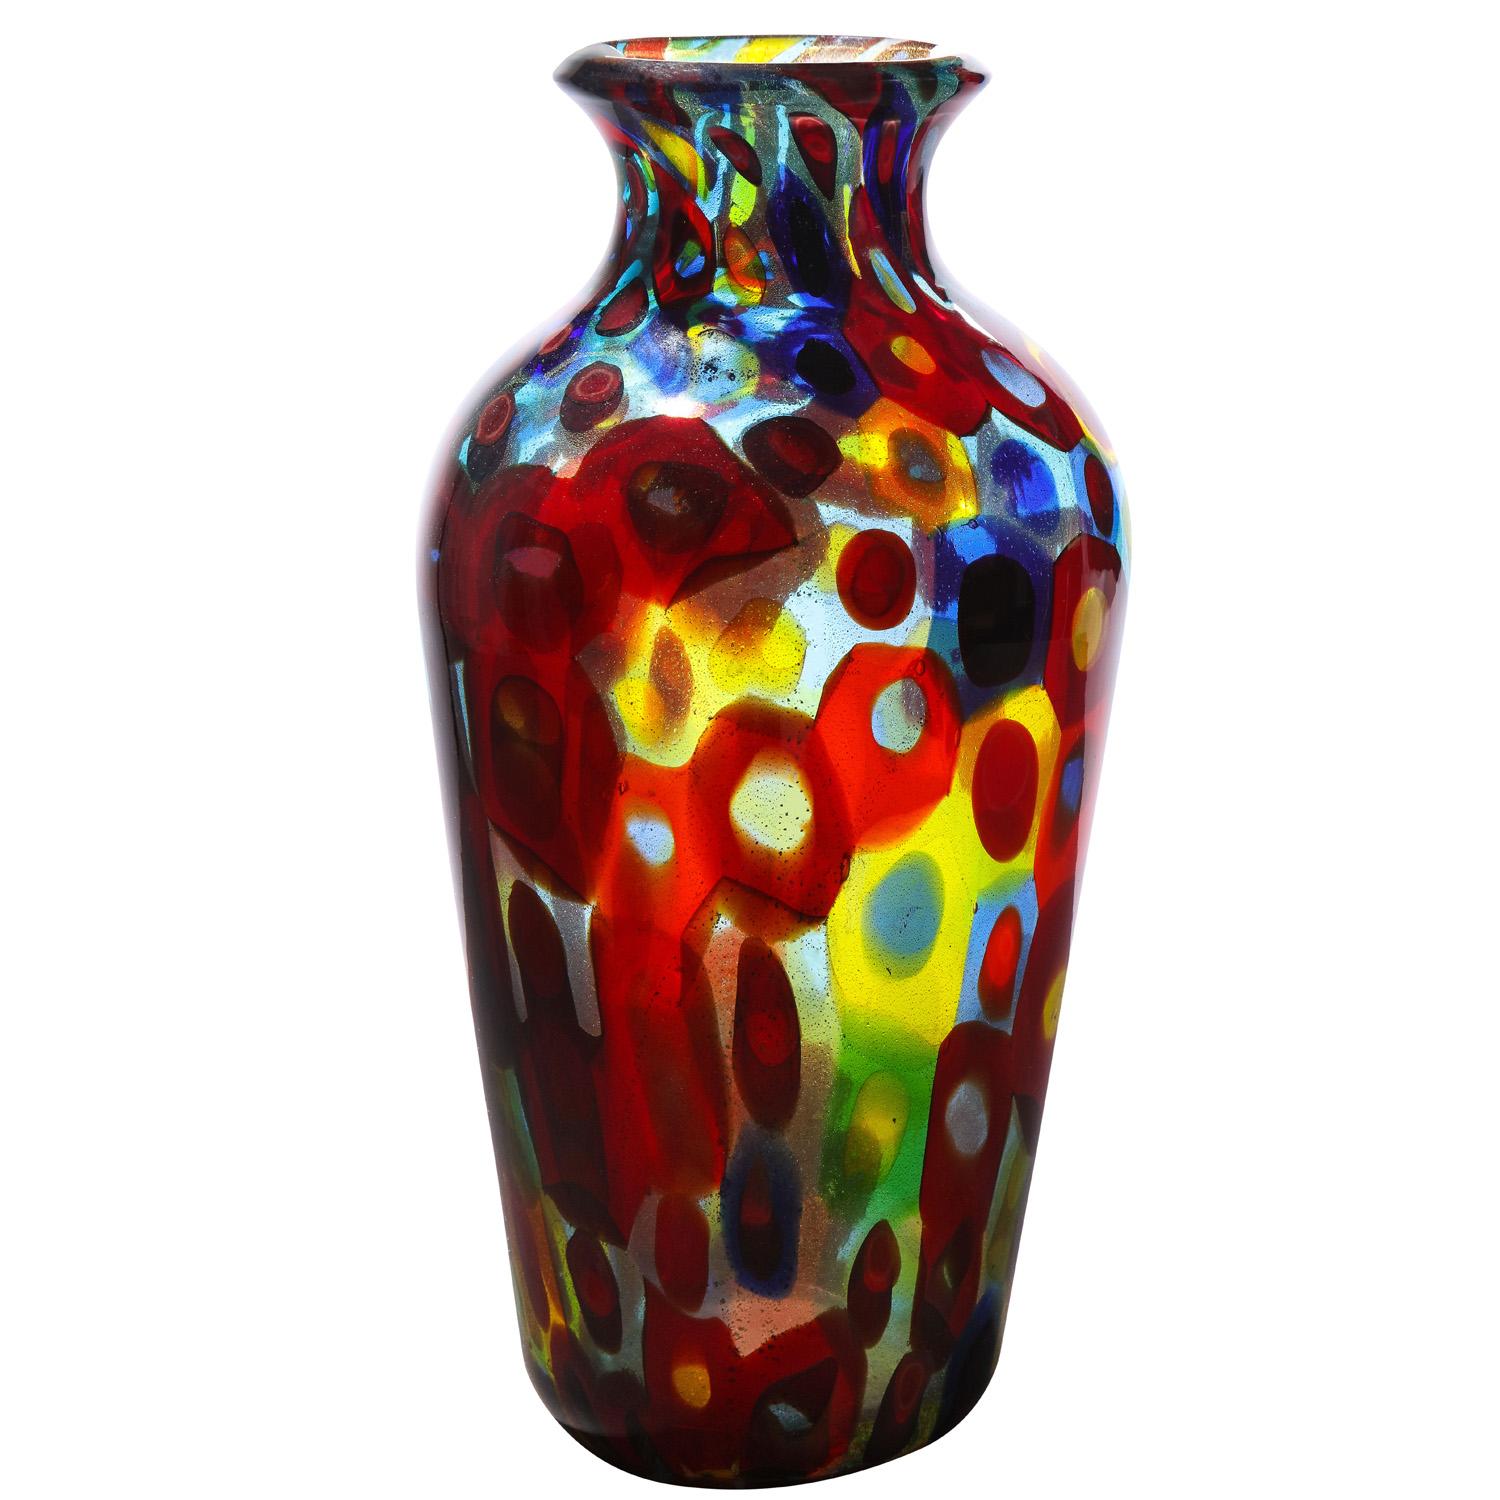 Vase aus mundgeblasenem Glas mit großen zweifarbigen Murrhinen und Goldfolie von Anzolo Fuga für Arte Vetraria Muranese (A.V.E.M.), Murano Italien, ca. 1956.  Die Farben der Murrhine und die Goldfolie machen dieses Stück zu einem